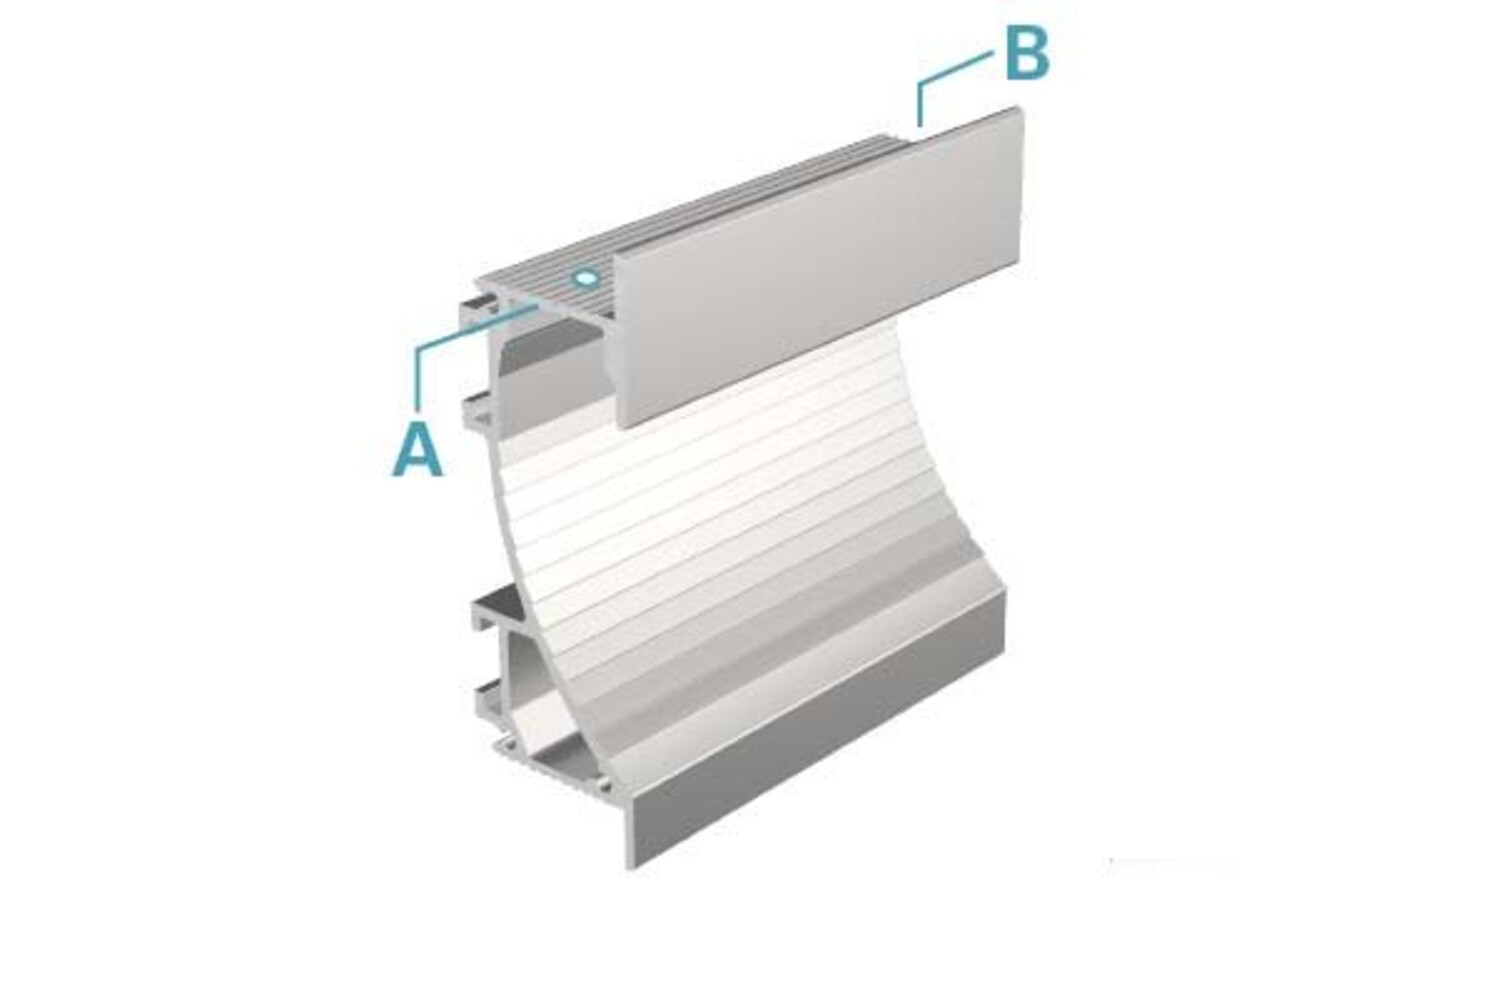 LED-Profil von Deko-Light in silber matt, eloxiert und ideal für 14mm LED-Stripes